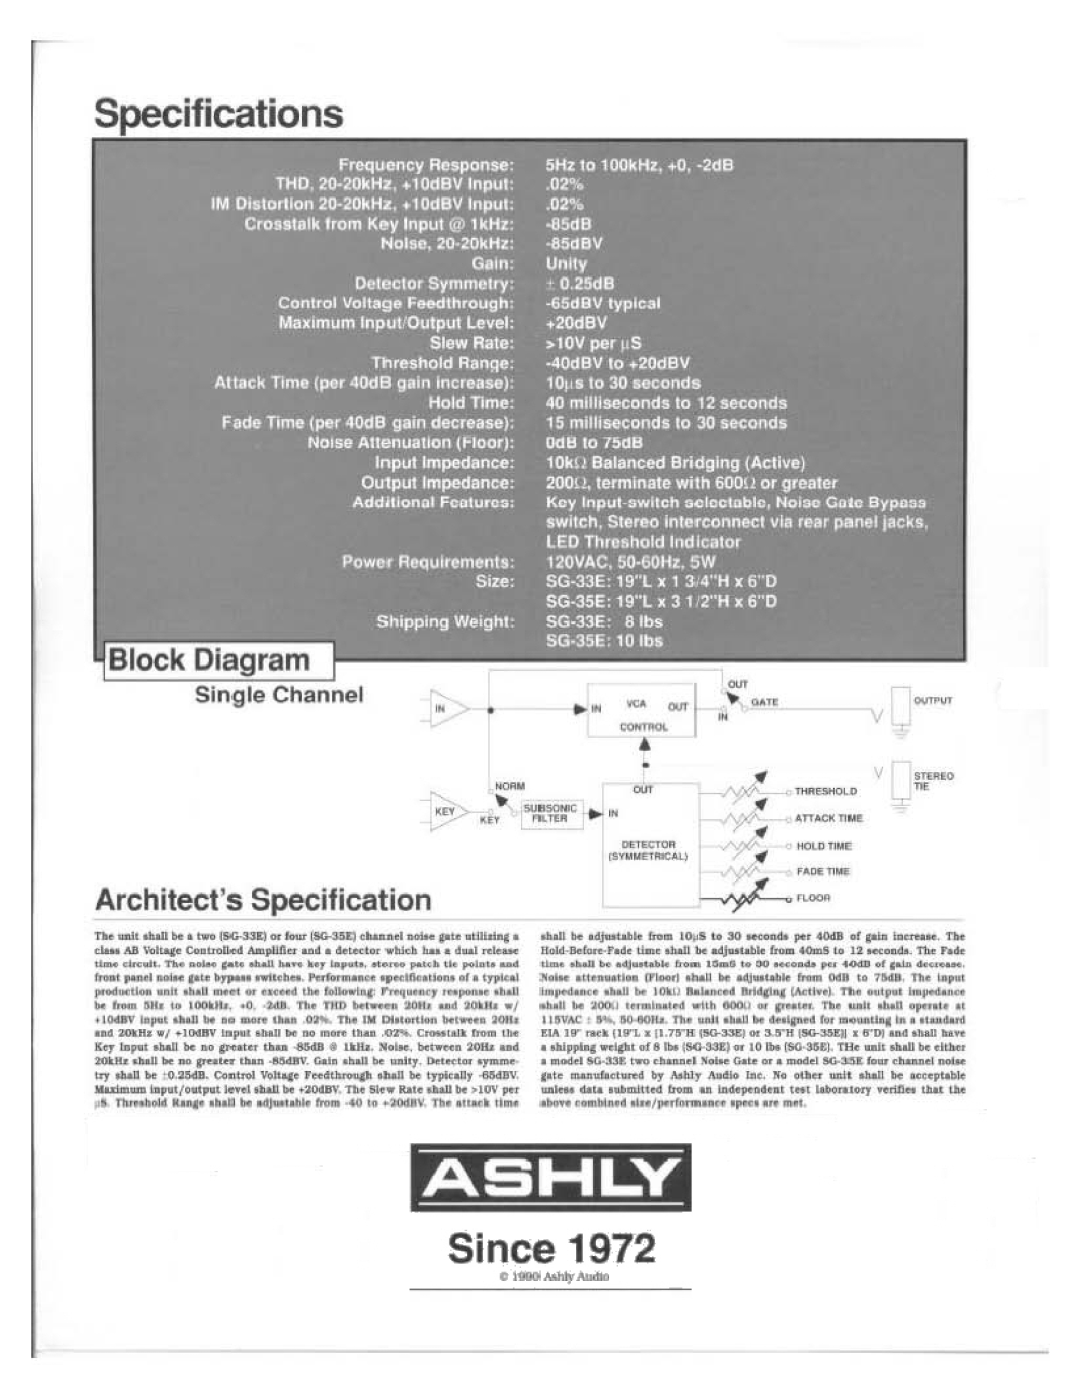 Ashly SG-33E, SG-35E manual 